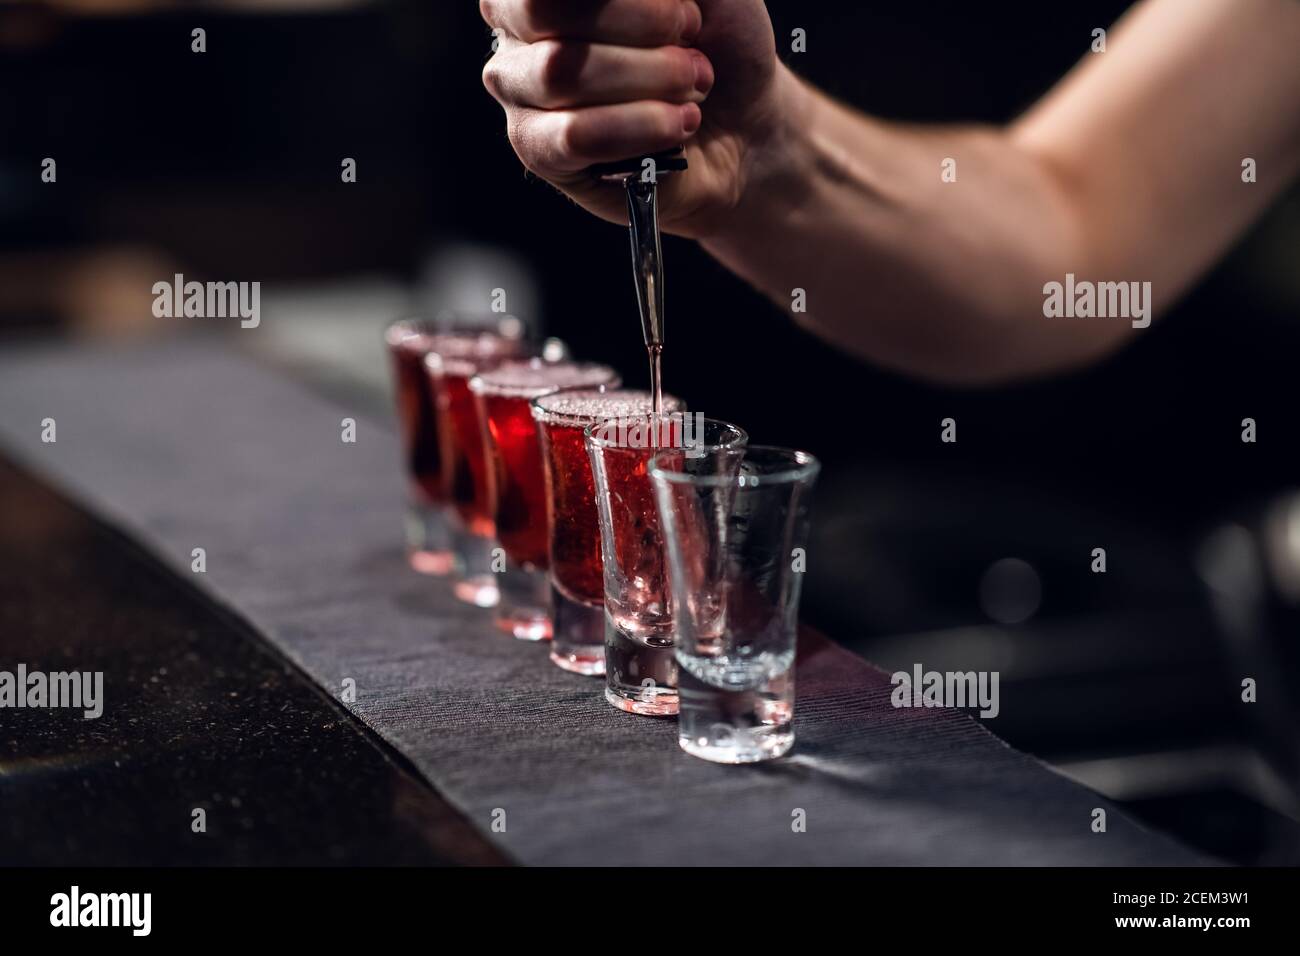 le barman verse de l'alcool rouge dans des coups de feu sur le bar, le spectacle du barman. Banque D'Images